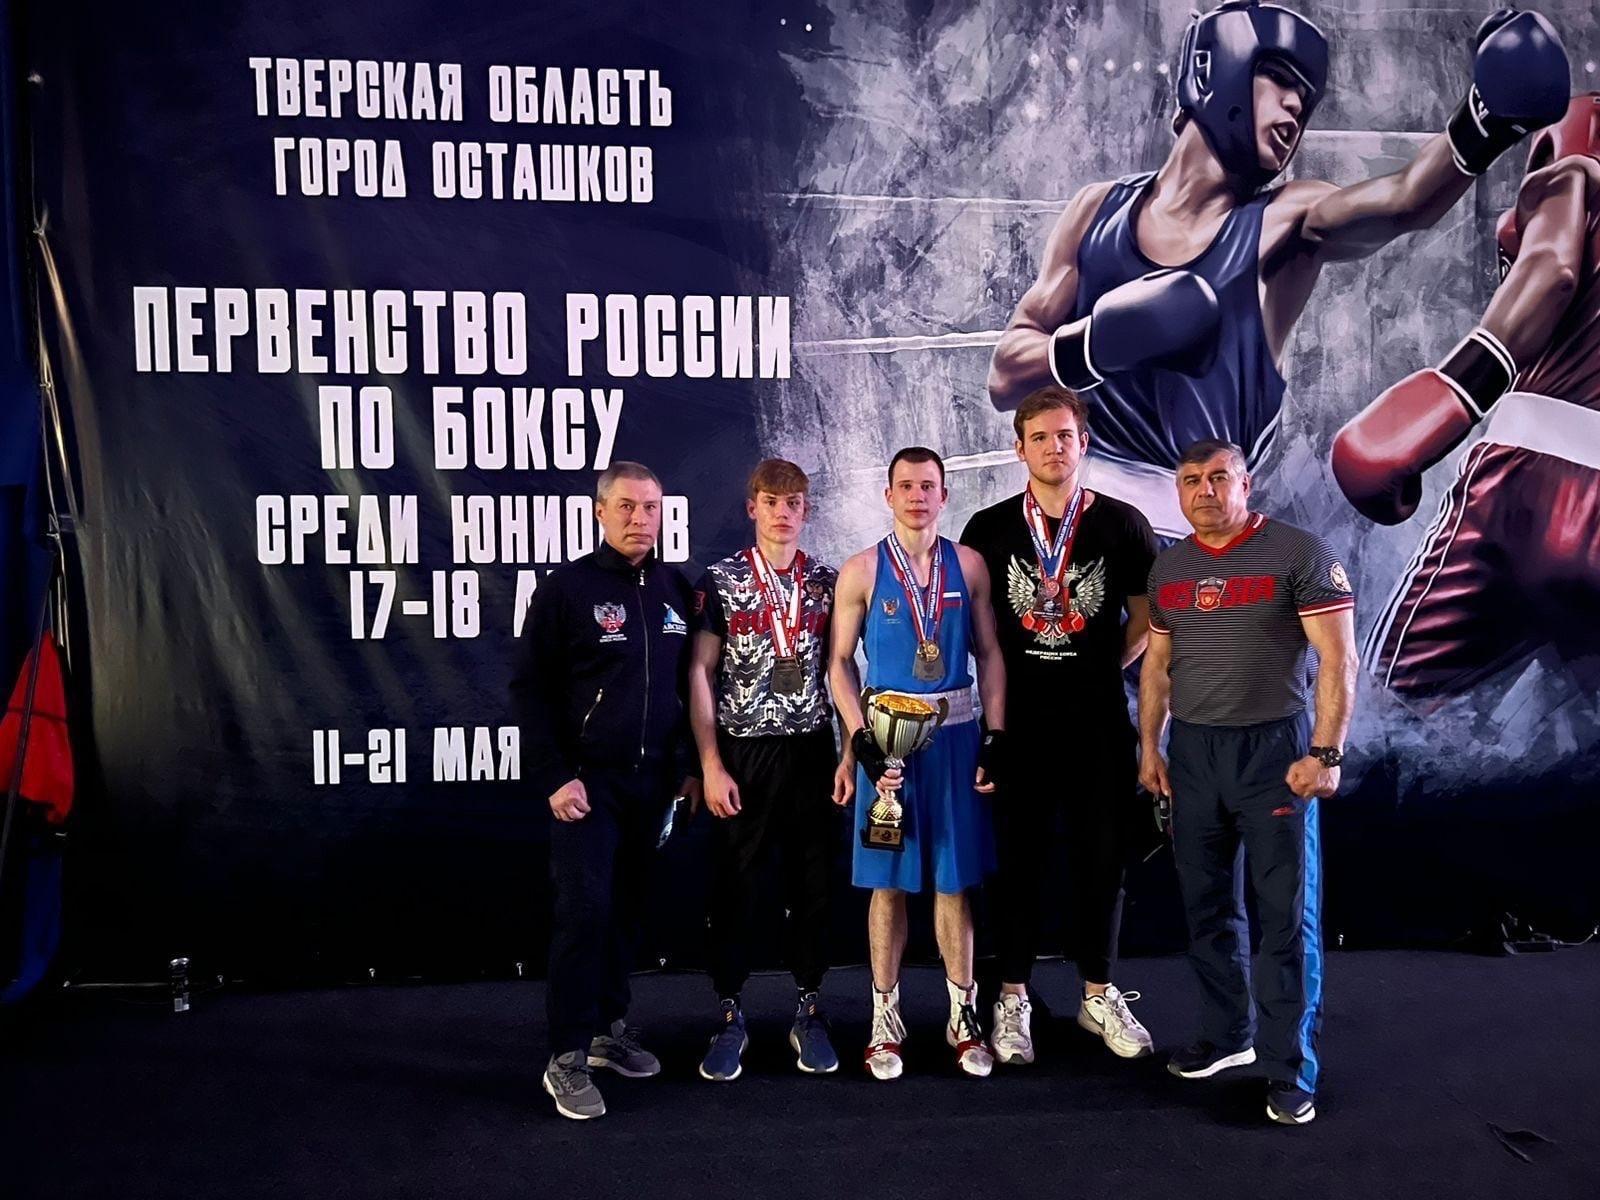 Староосколец стал бронзовым призёром первенства России по боксу среди юниоров 17–18 лет.